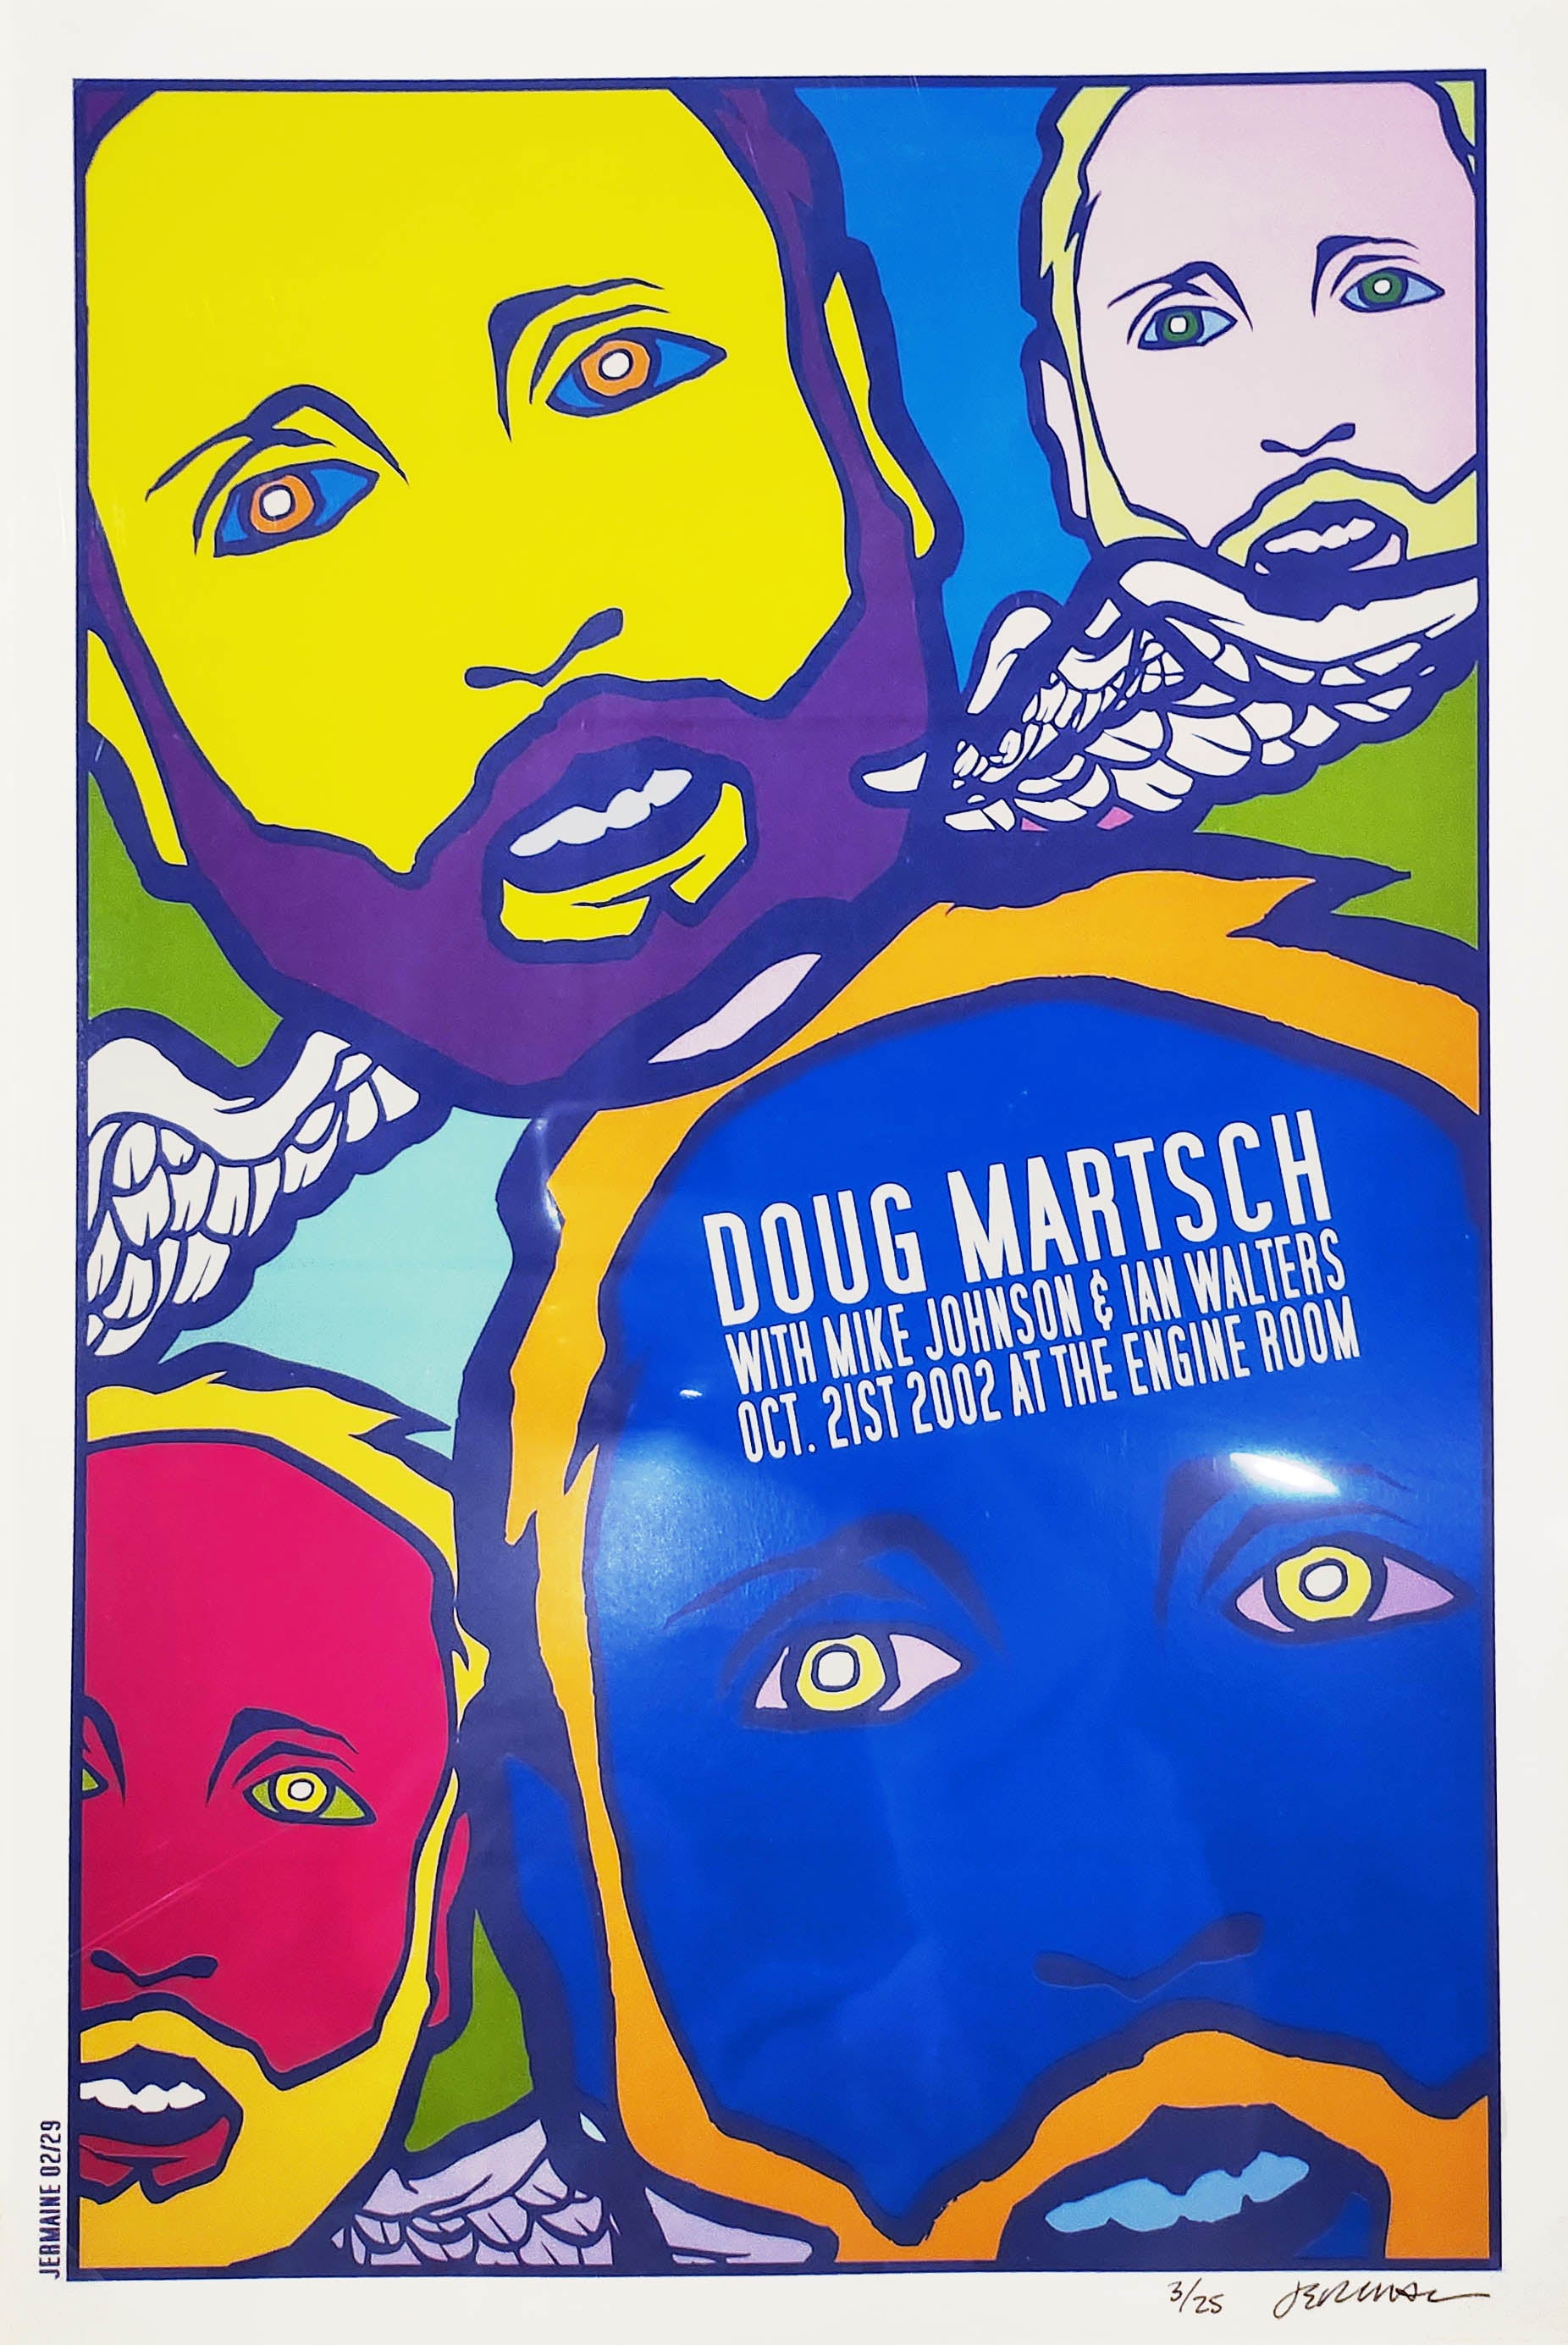 Doug Martsch - Houston, TX - 10.21.02 3/25